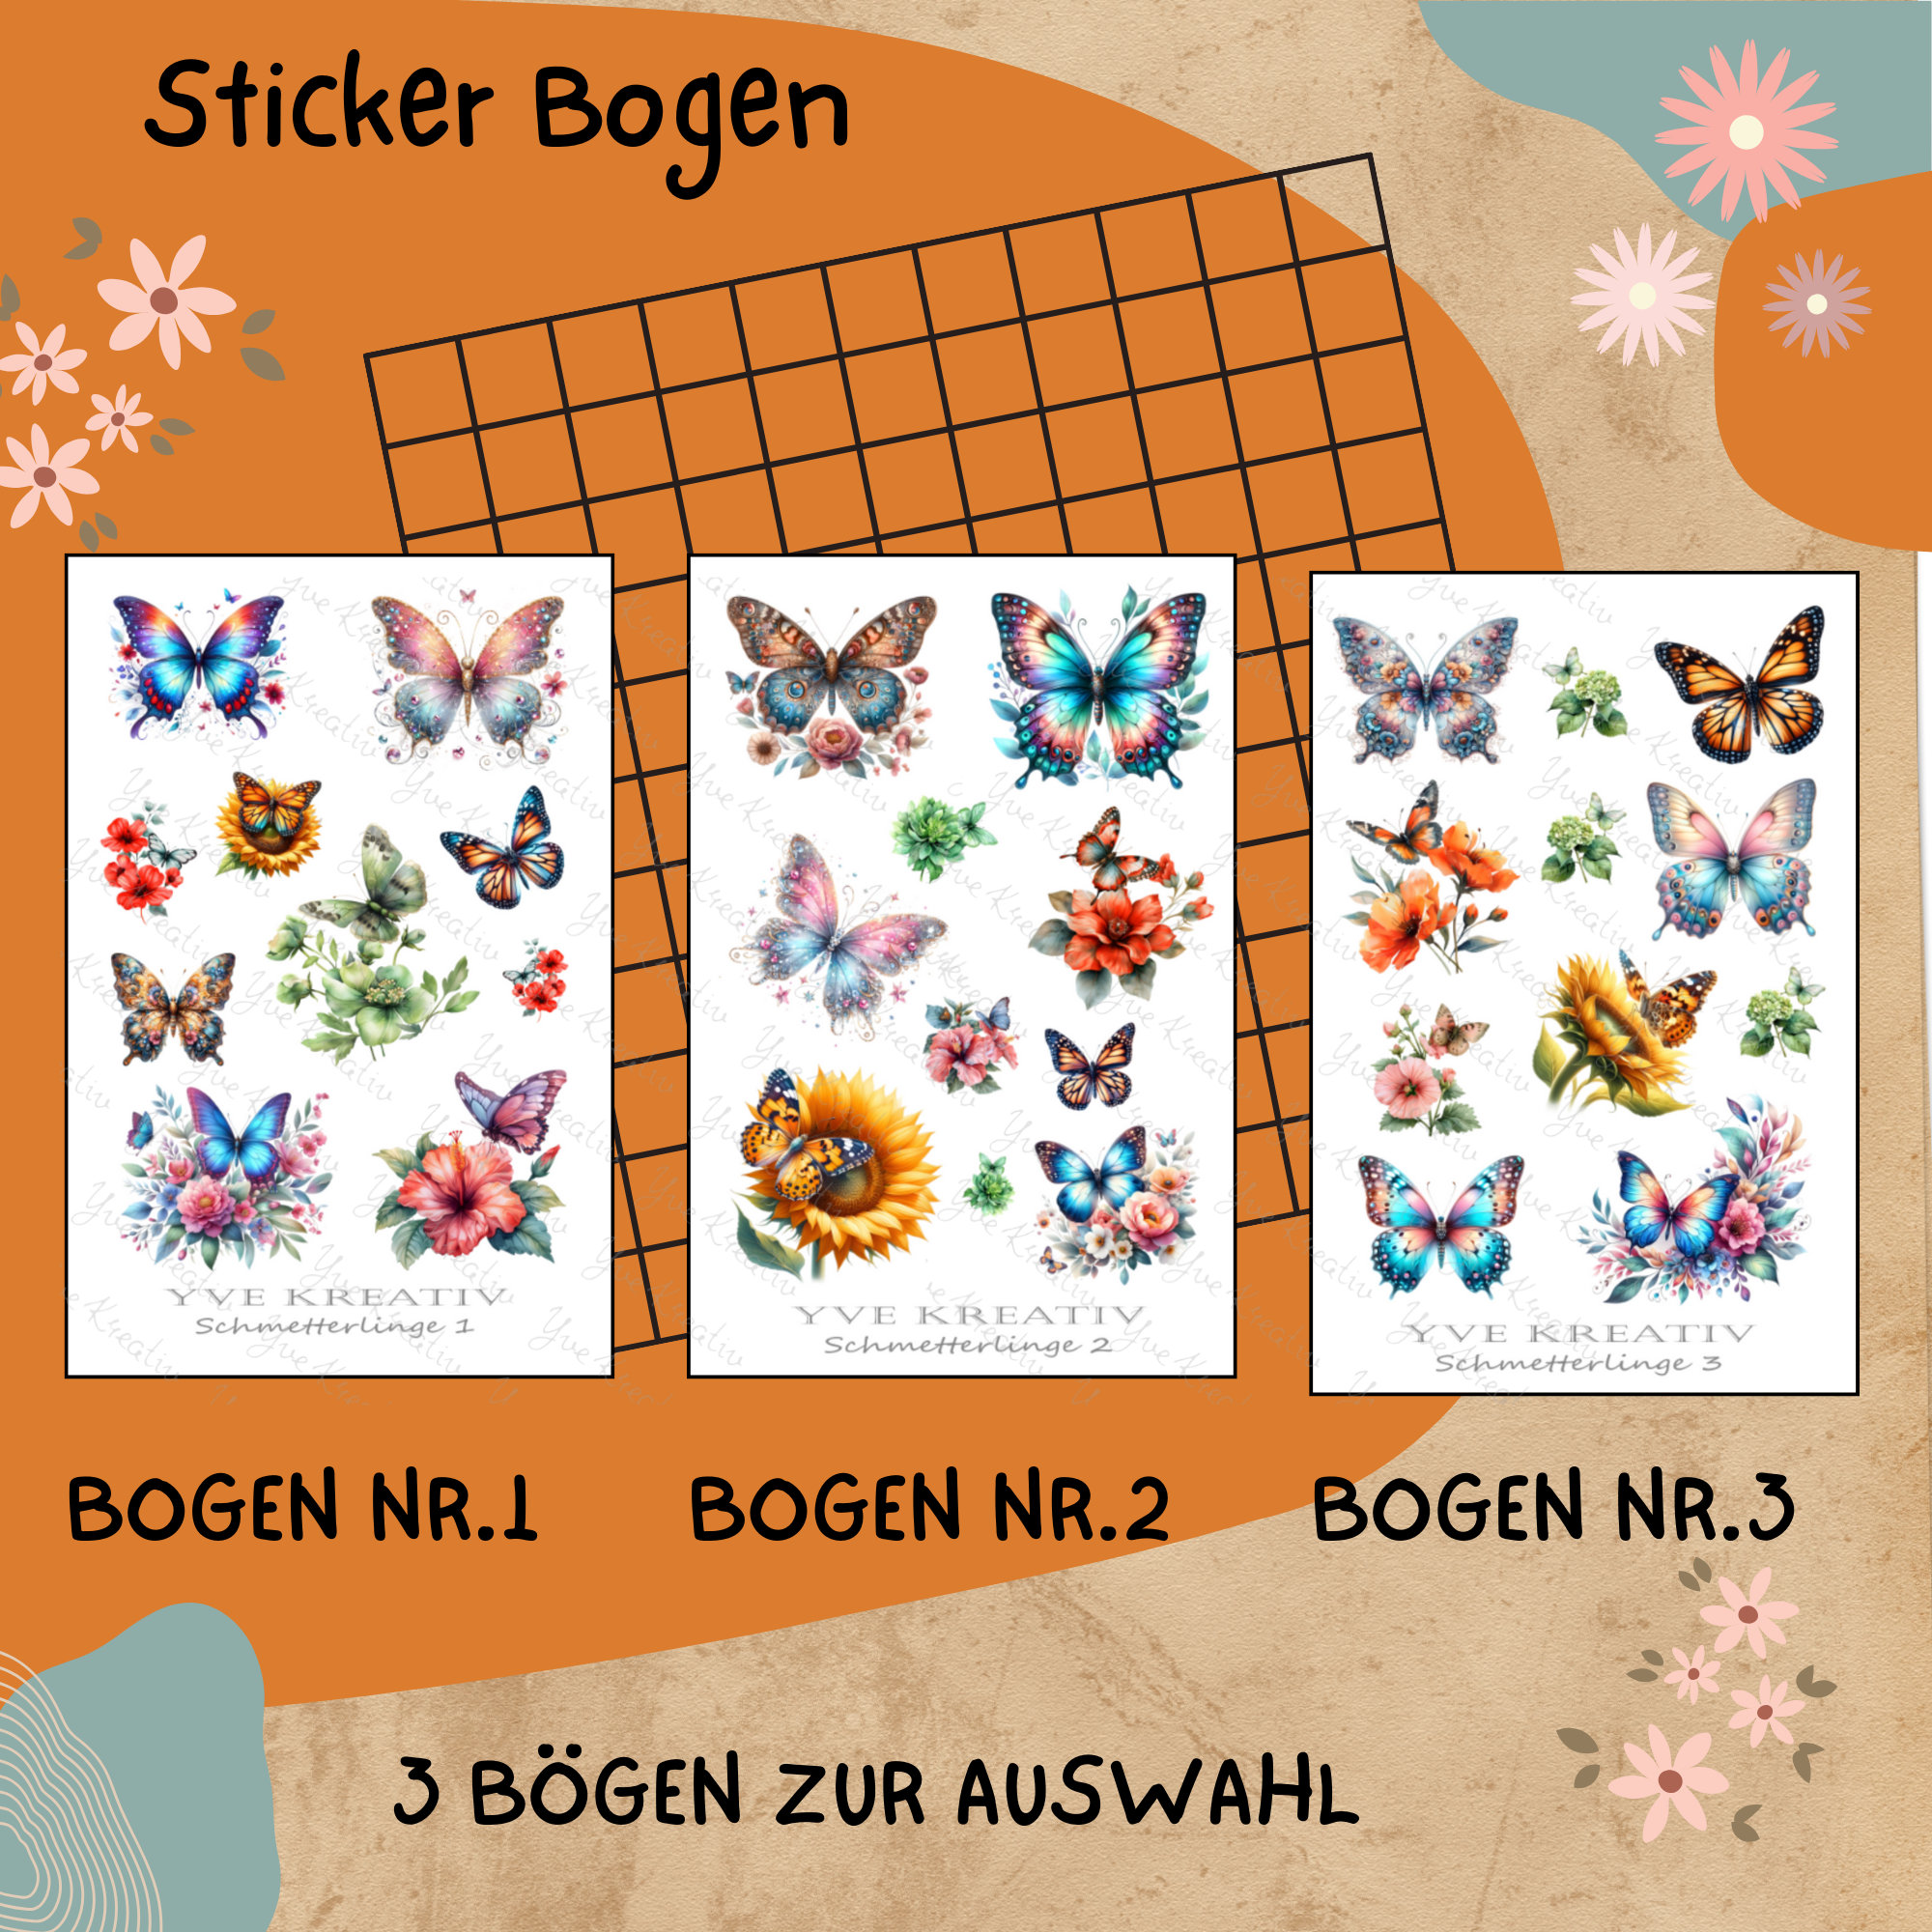 Sticker Bogen " Schmetterlinge Sommer " | Sticker Set - Aufkleber 3 Stickerbogen zur Auswahl in Weiß - Transparent - Matt - Glanz